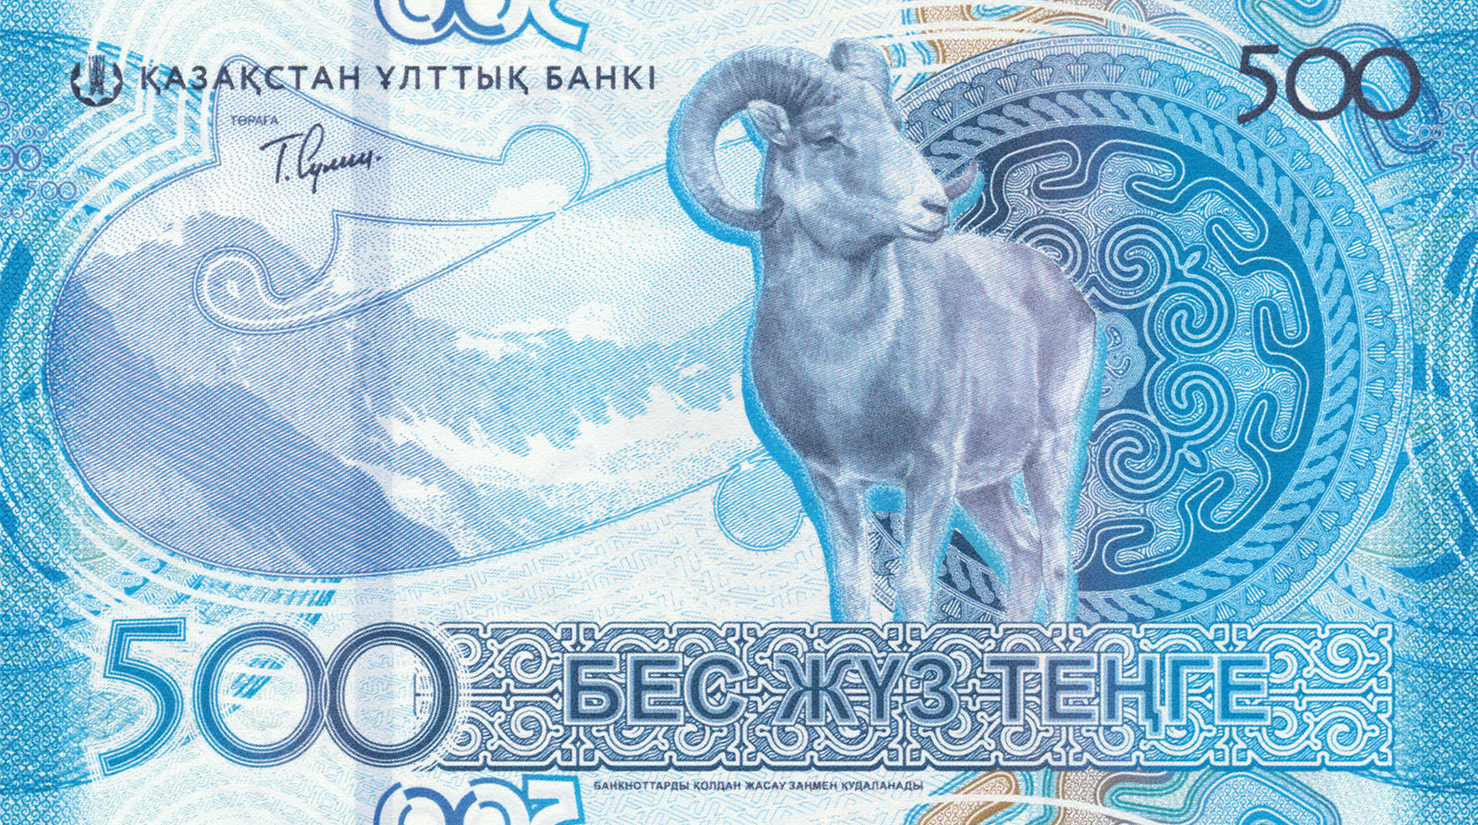 Нацбанк Казахстана презентовал новую серию банкнот национальной валюты (ФОТО)